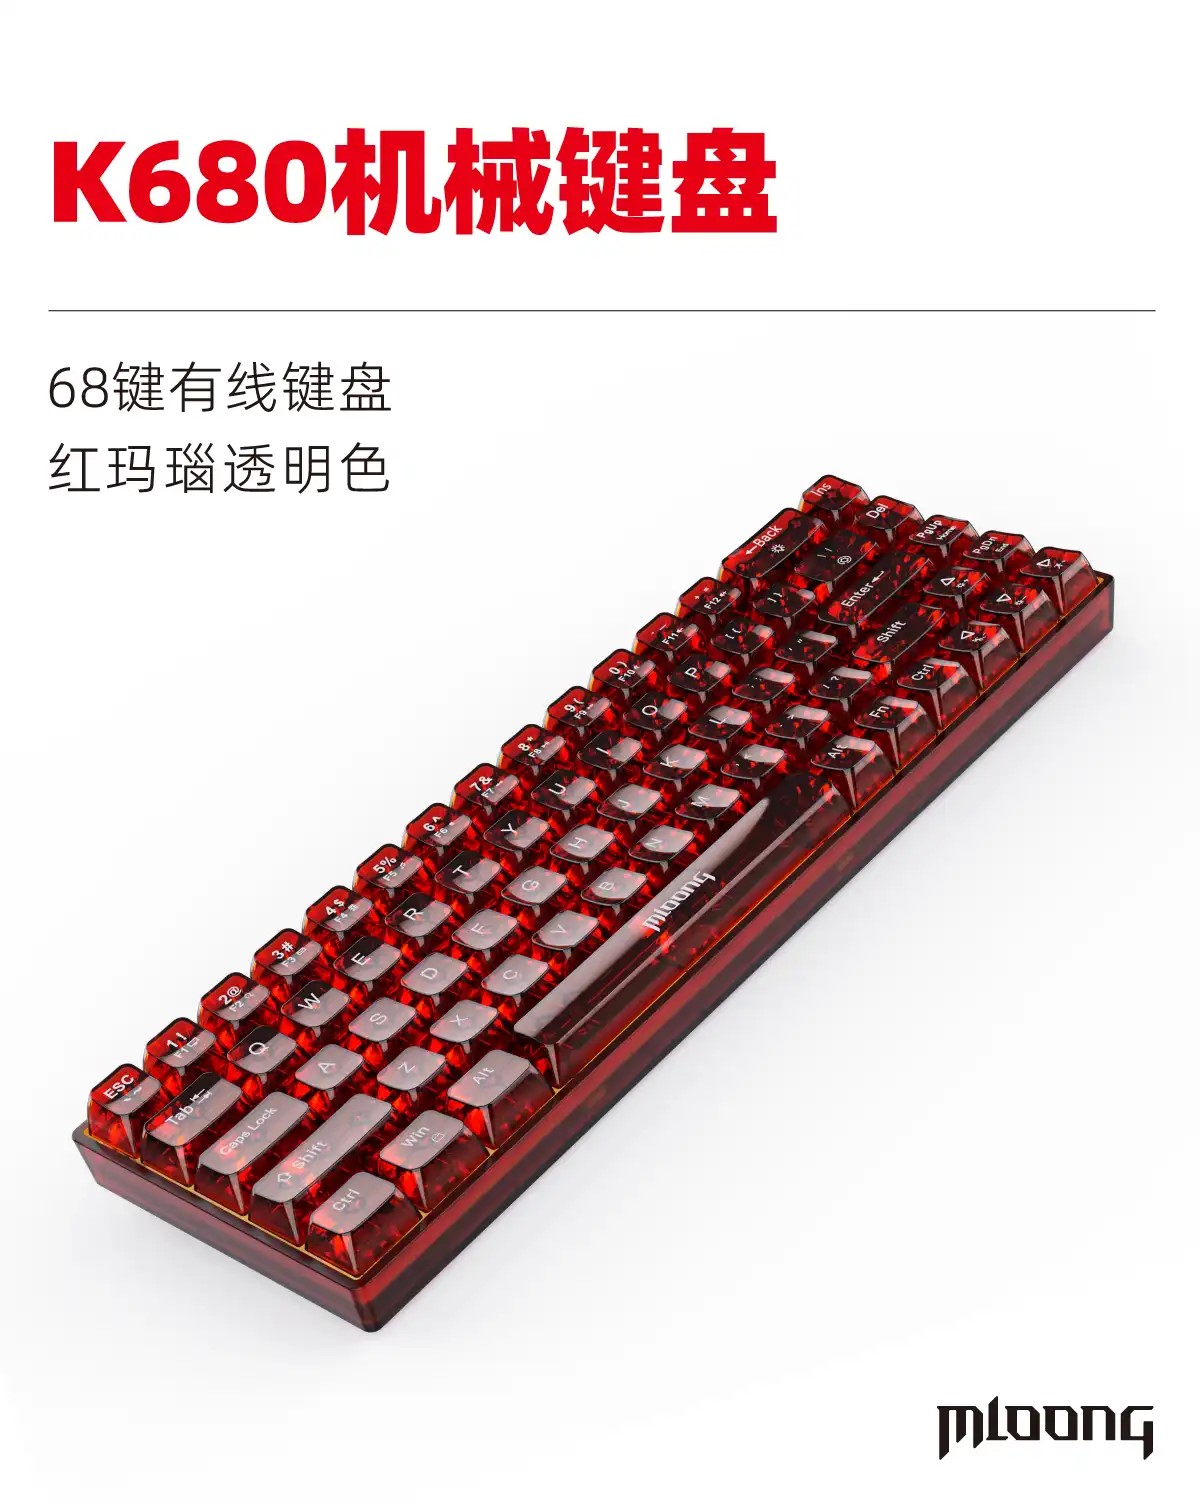 名龙堂推出 K680 有线机械键盘：透明键帽设计，65% 配列